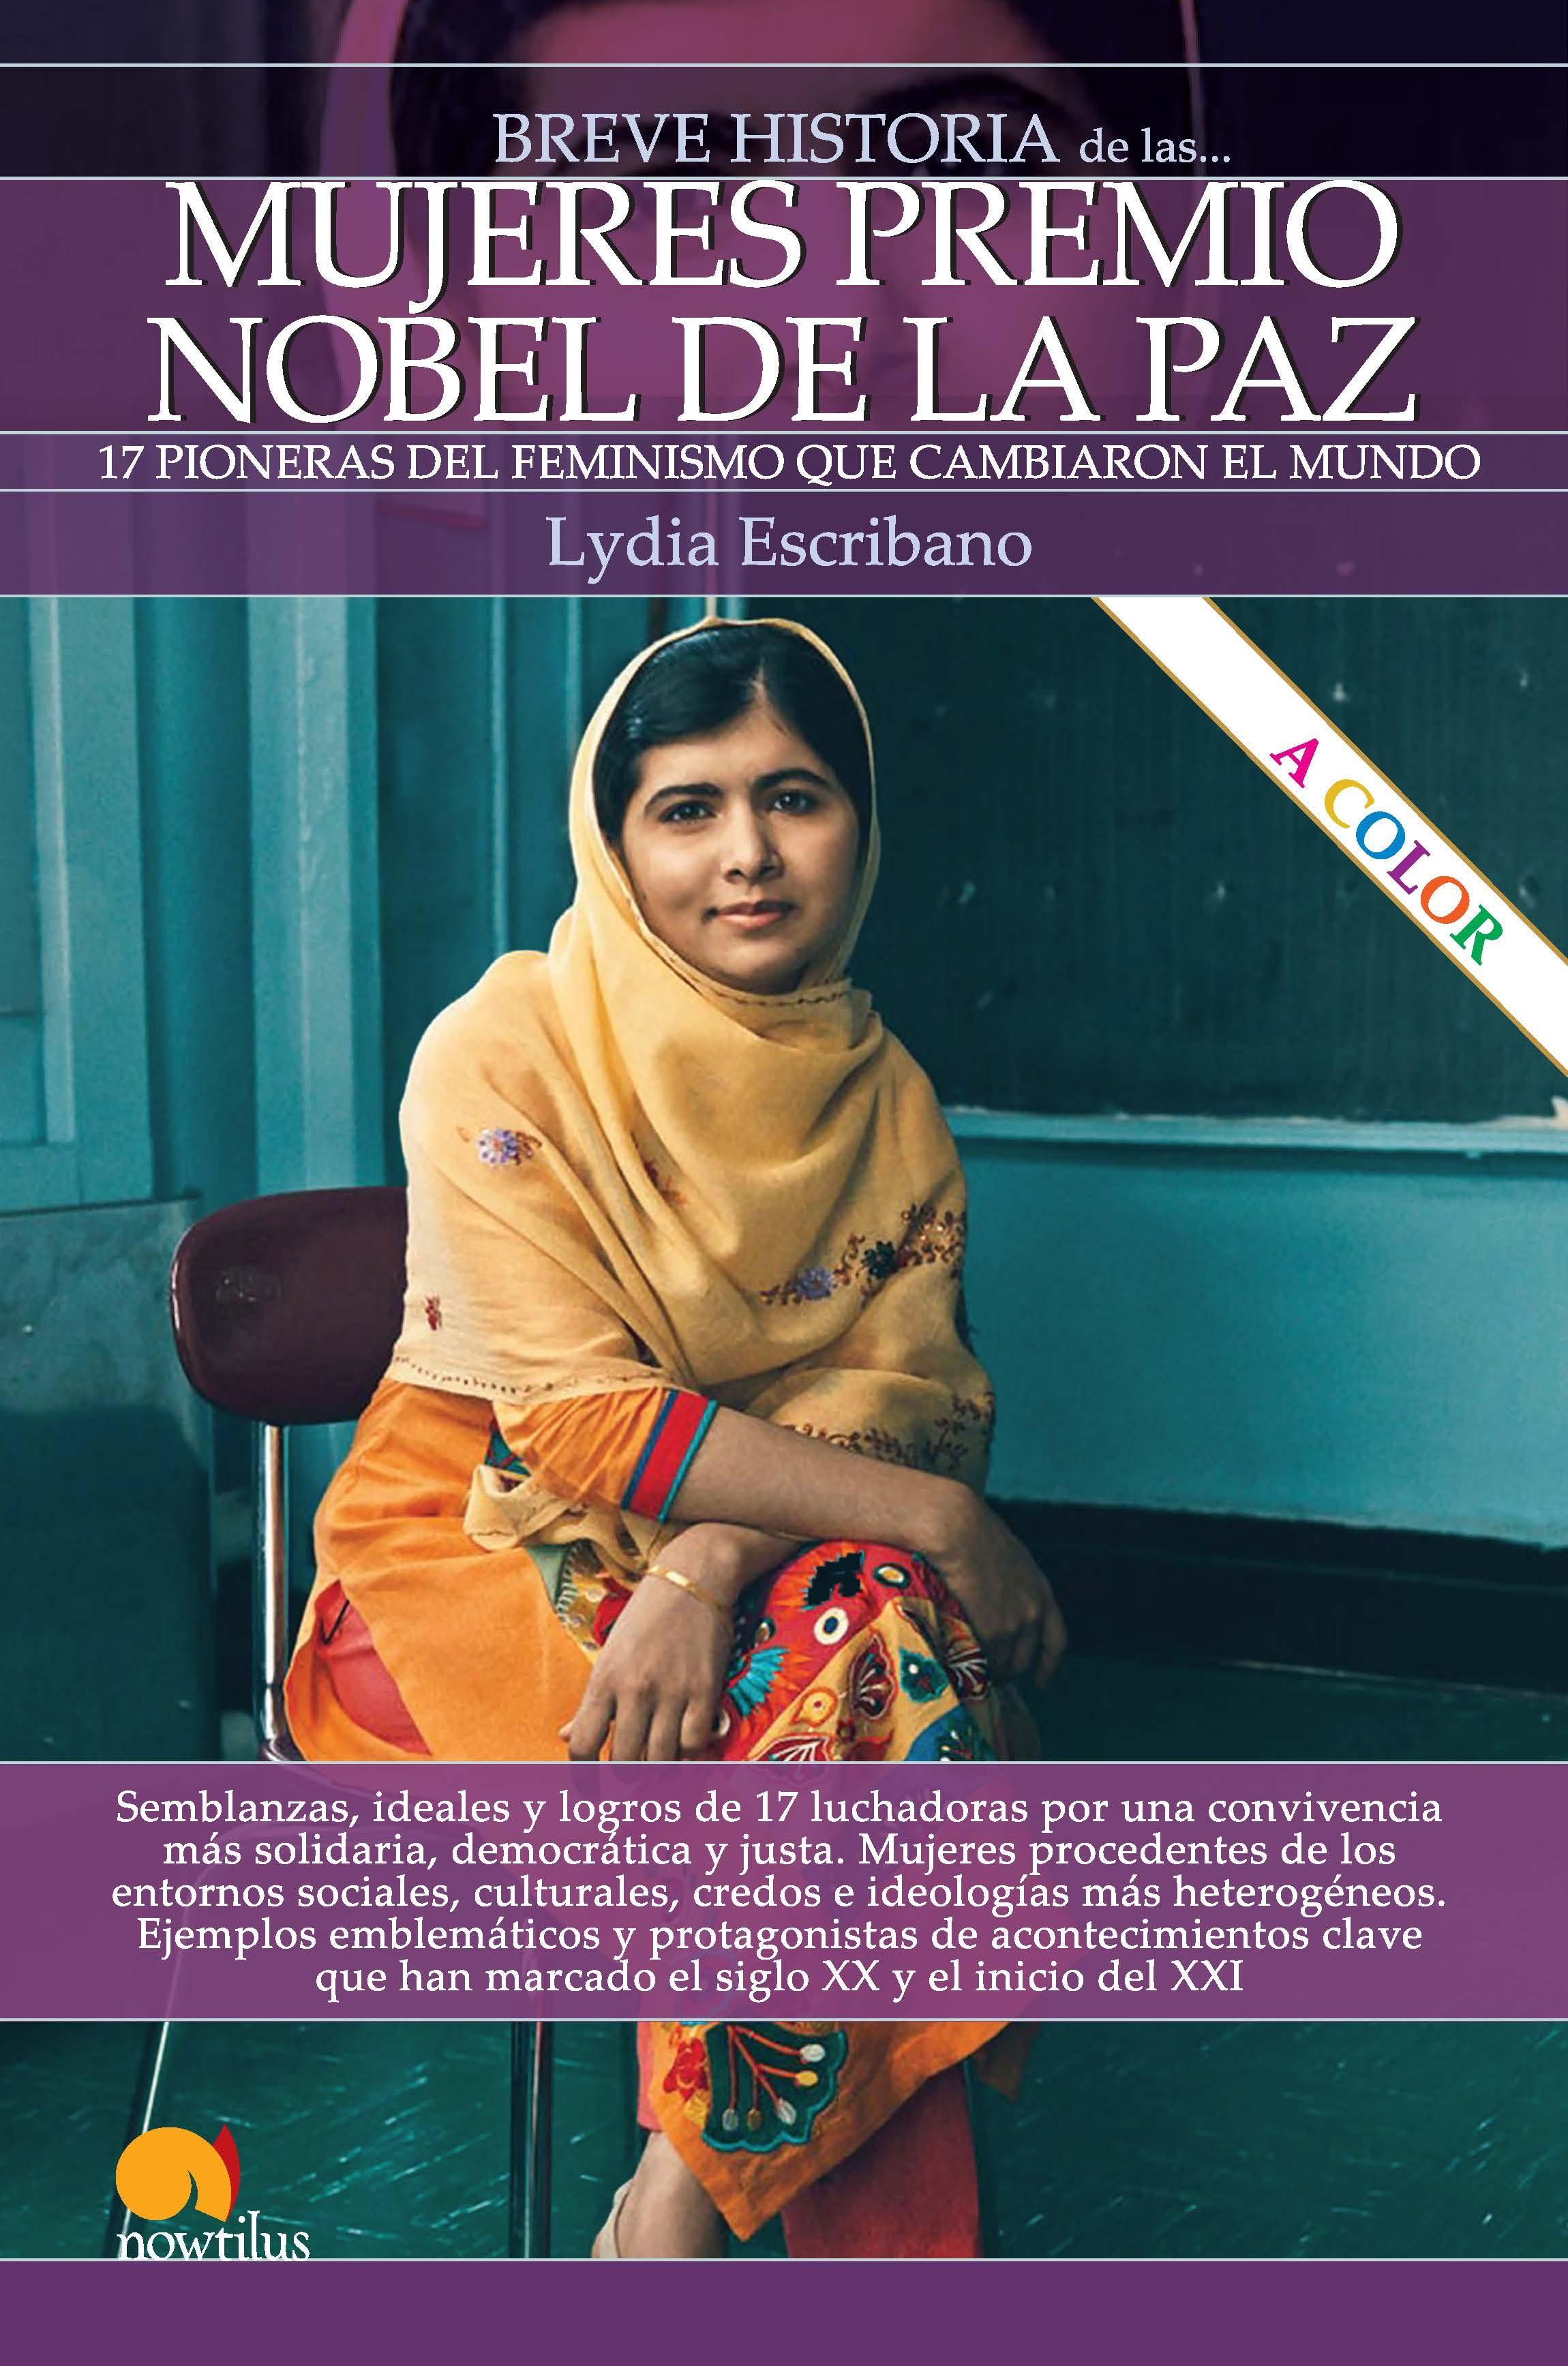 Breve Historia de las Mujeres Premio Nobel de la Paz